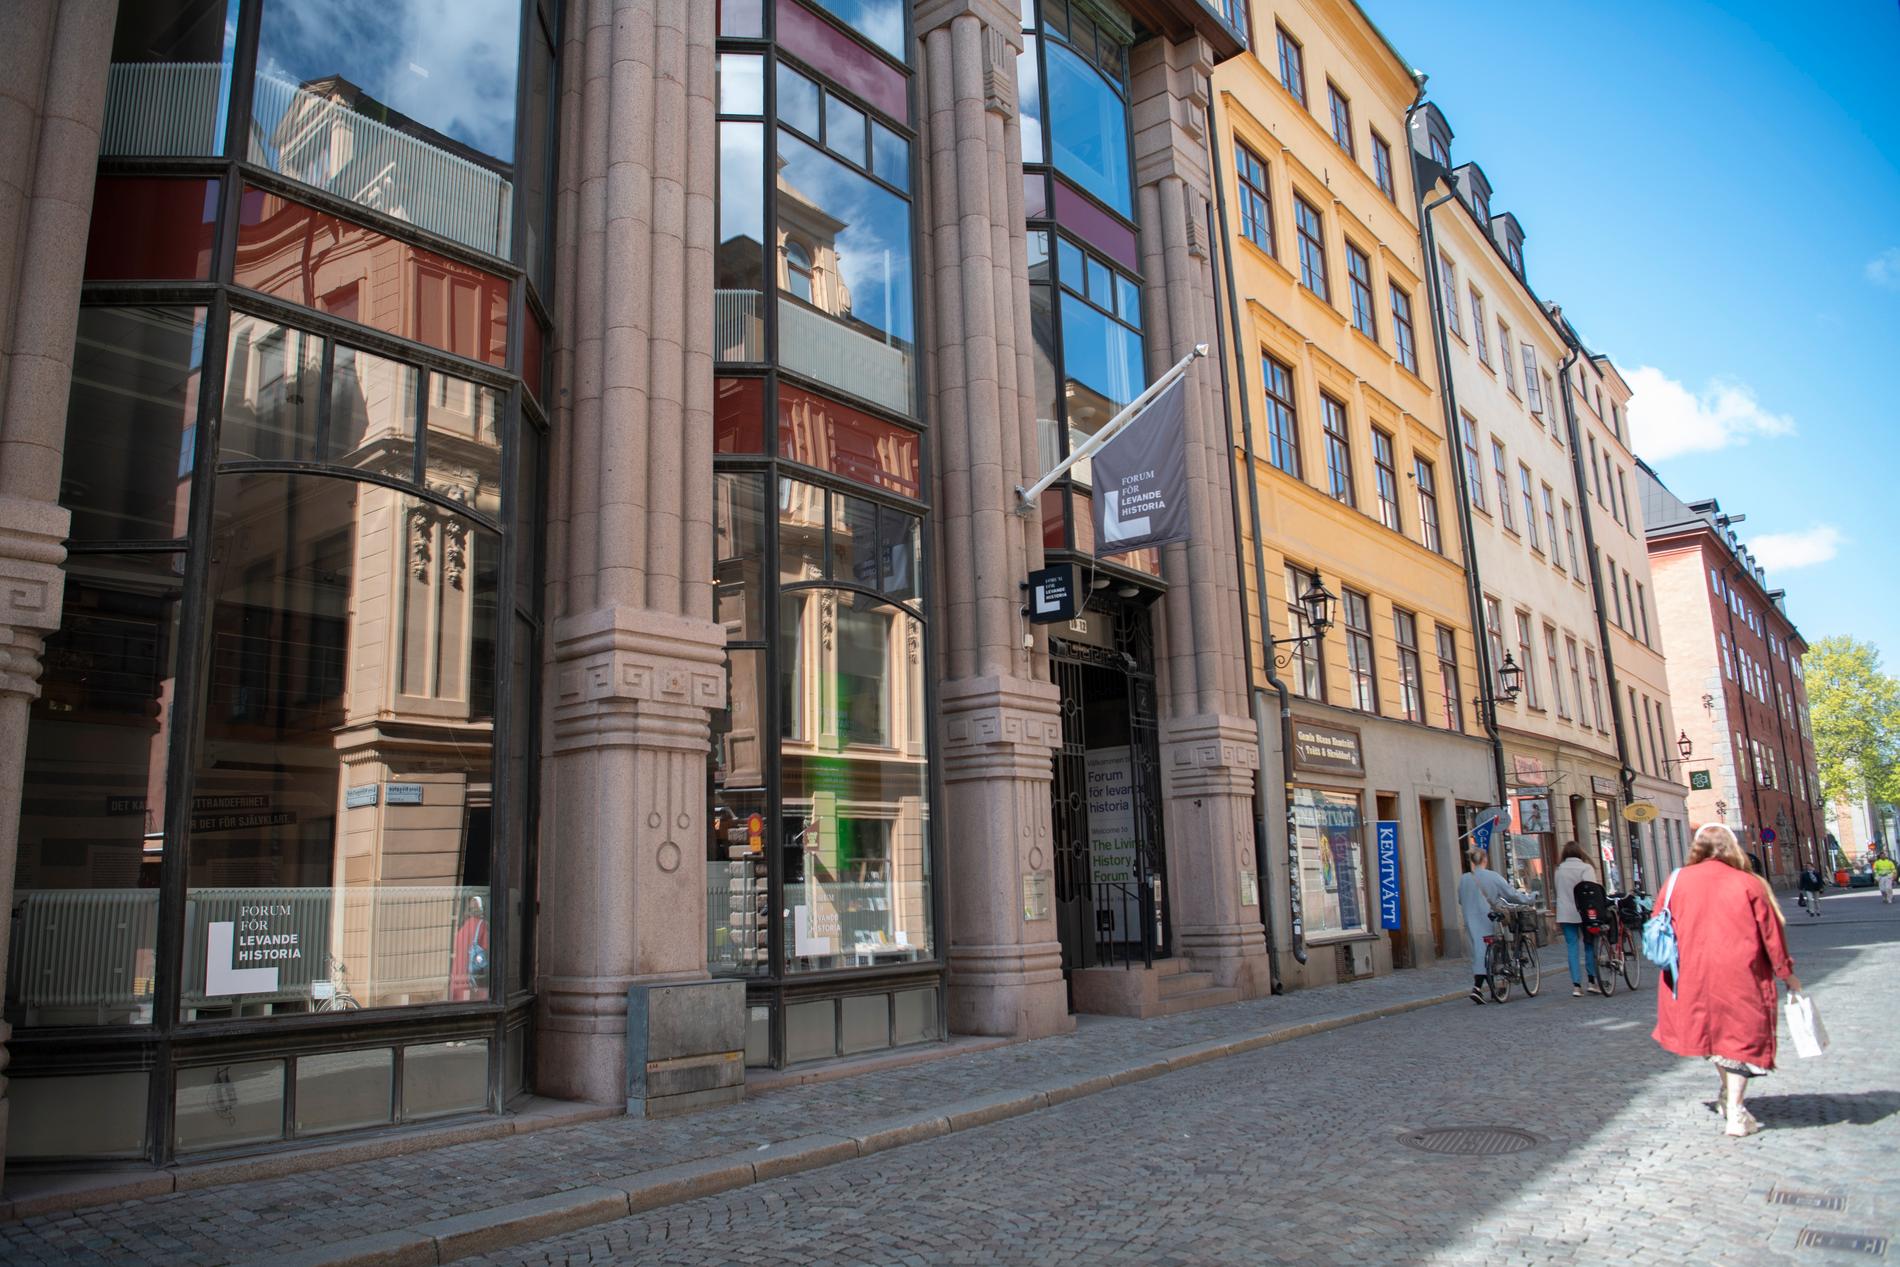 Forum för levande historia är en myndighet i Stockholm som bland annat informerar om förintelsen. Arkivbild.